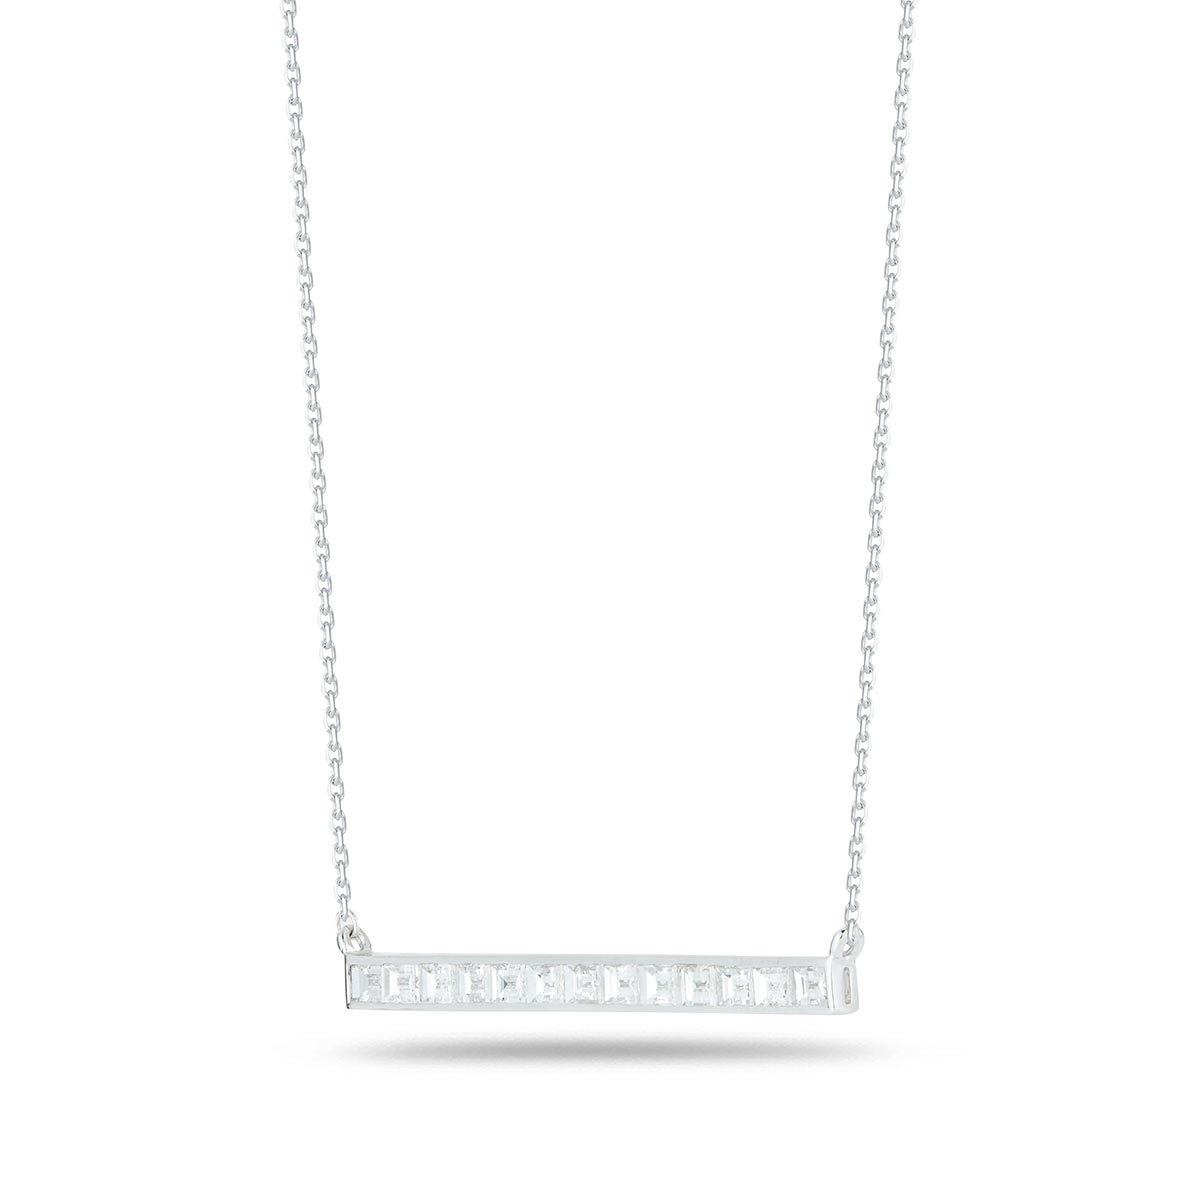 1.24ctw Baguette Cut Diamond Necklace, 18ct White Gold